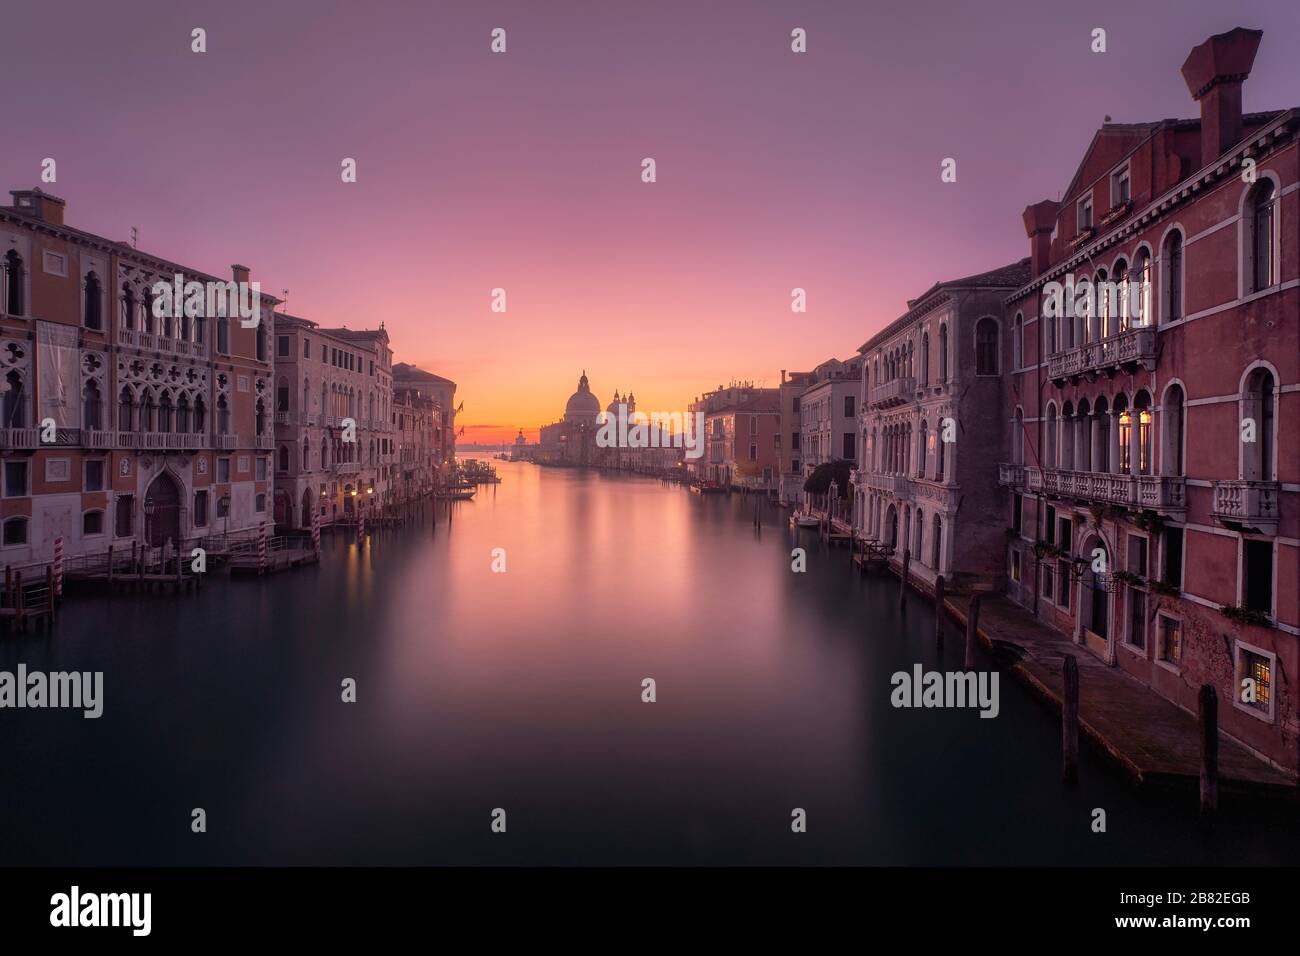 Ponte dell'Accademia in Venice (Italy) Stock Photo